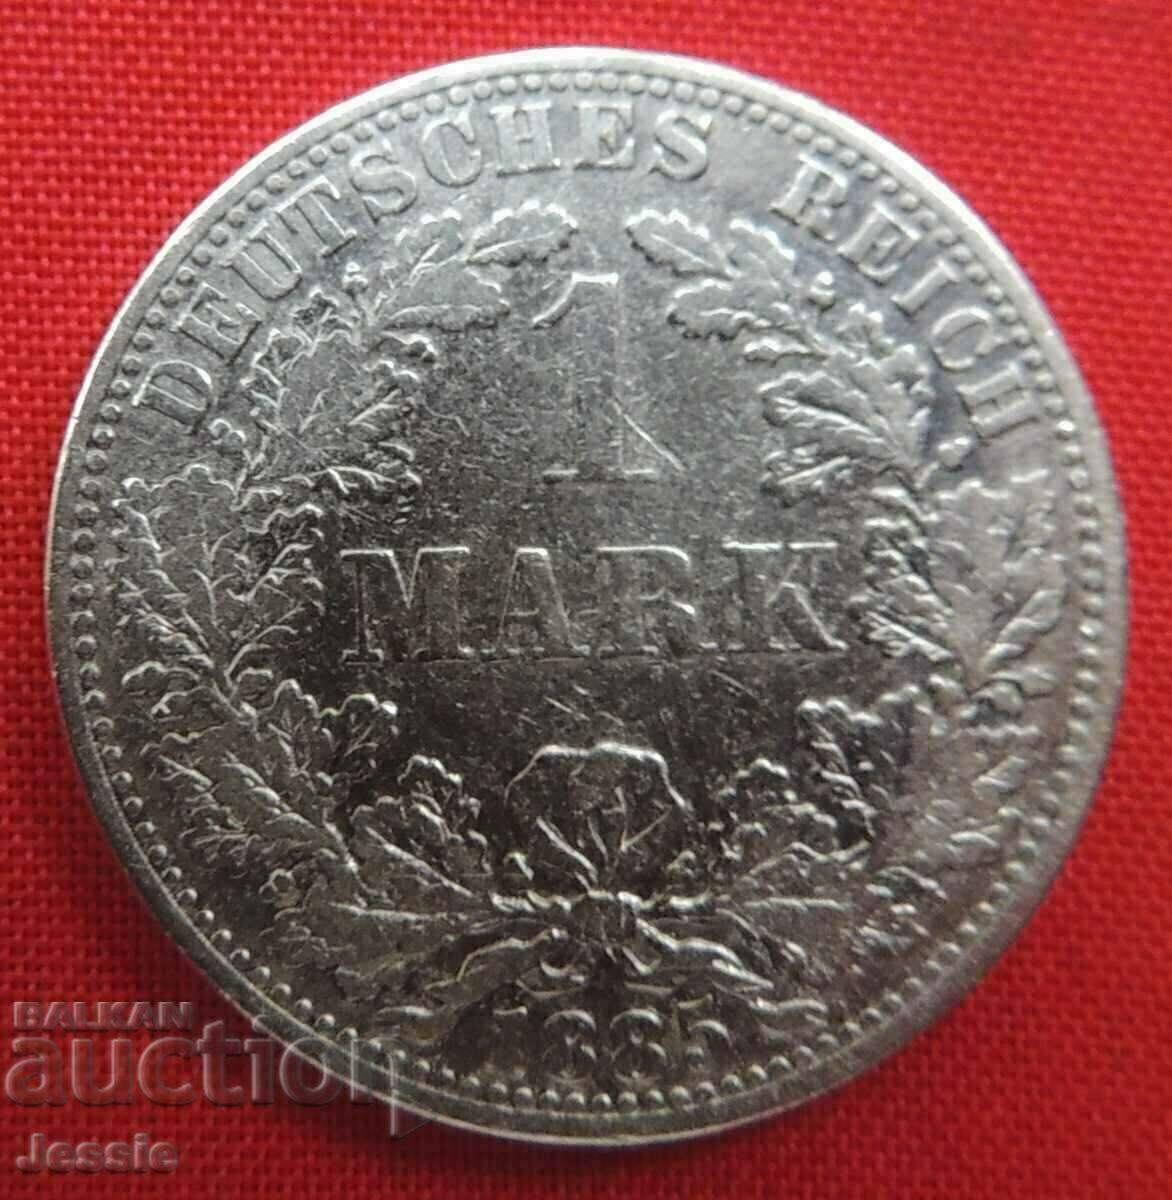 1 Mark 1885 A Germany silver Berlin